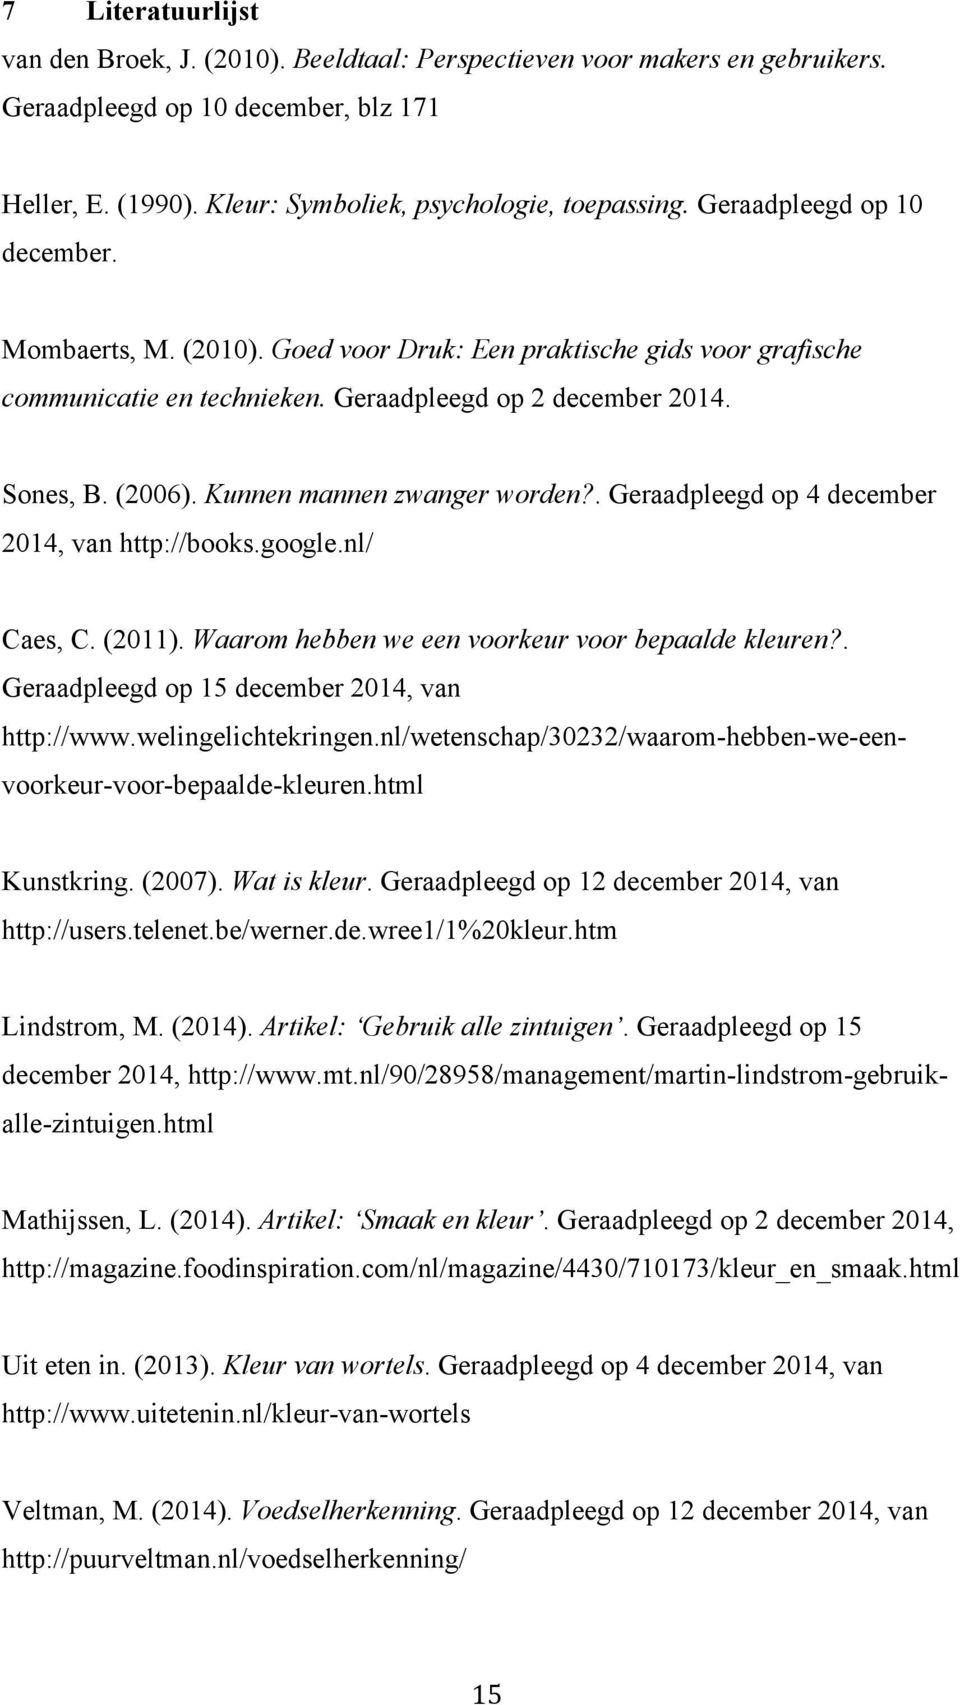 Kunnen mannen zwanger worden?. Geraadpleegd op 4 december 2014, van http://books.google.nl/ Caes, C. (2011). Waarom hebben we een voorkeur voor bepaalde kleuren?